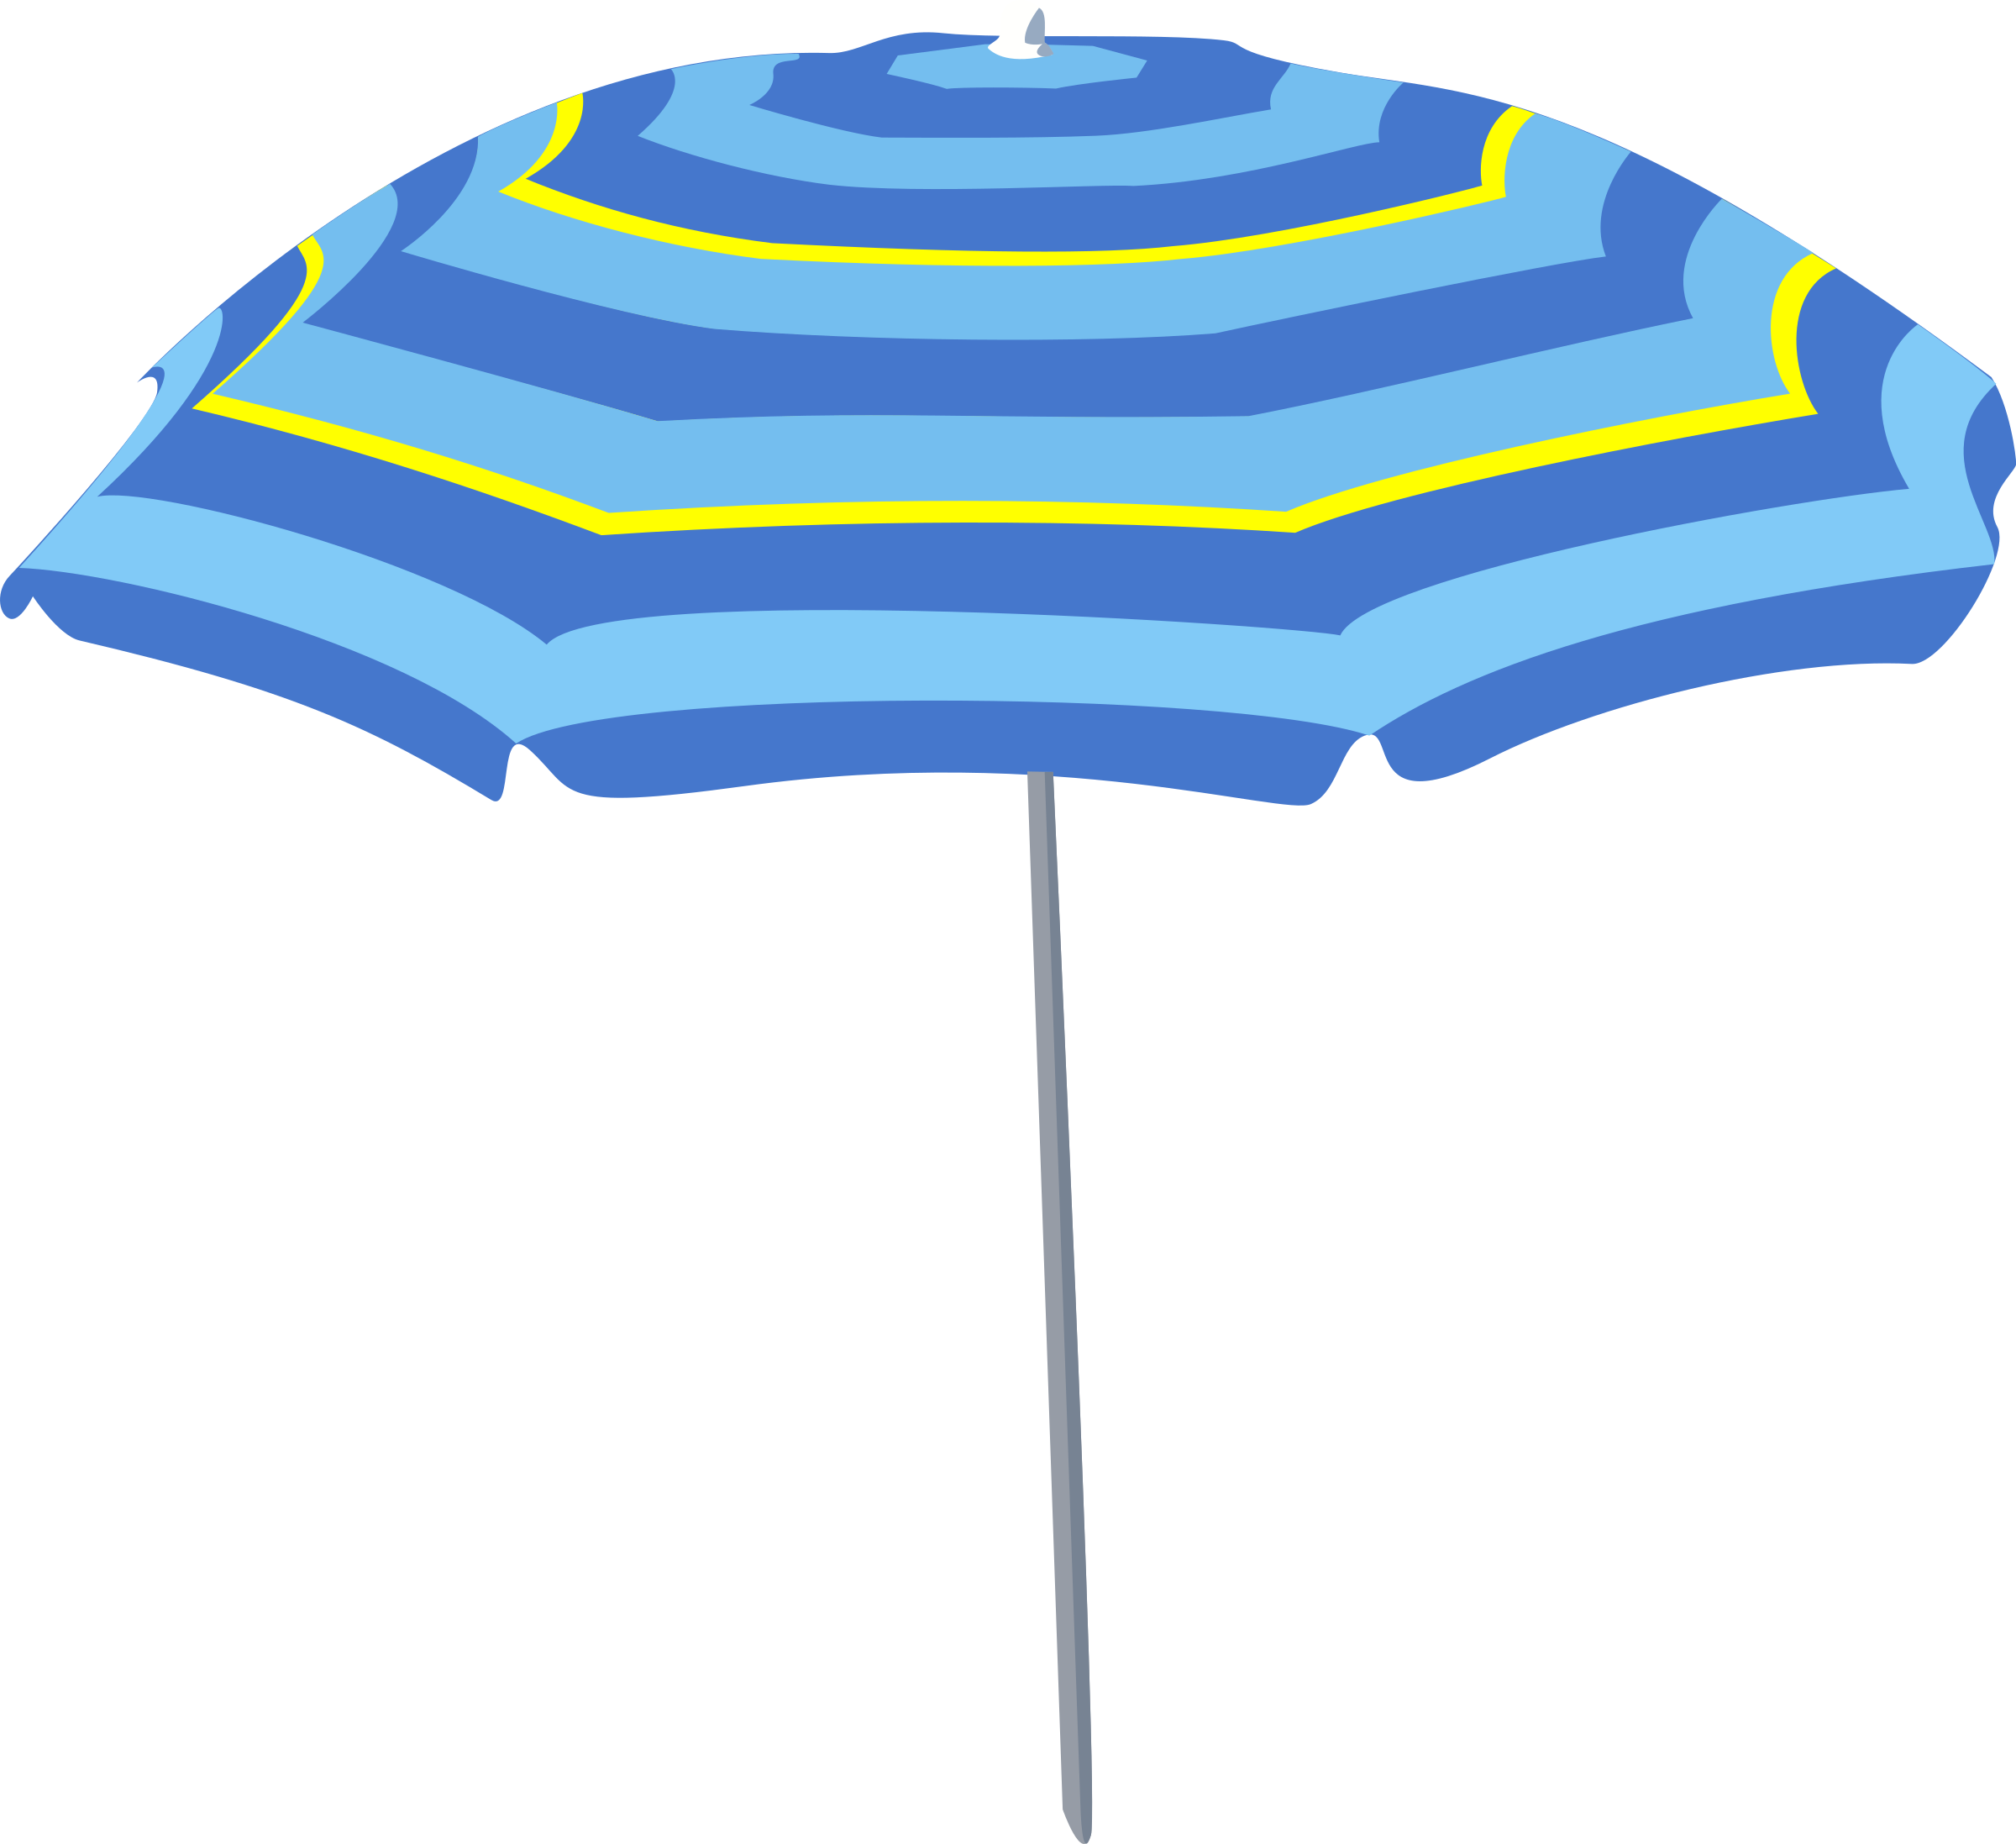 Clipart umbrella turquoise. Schirm sonnenschirm big image